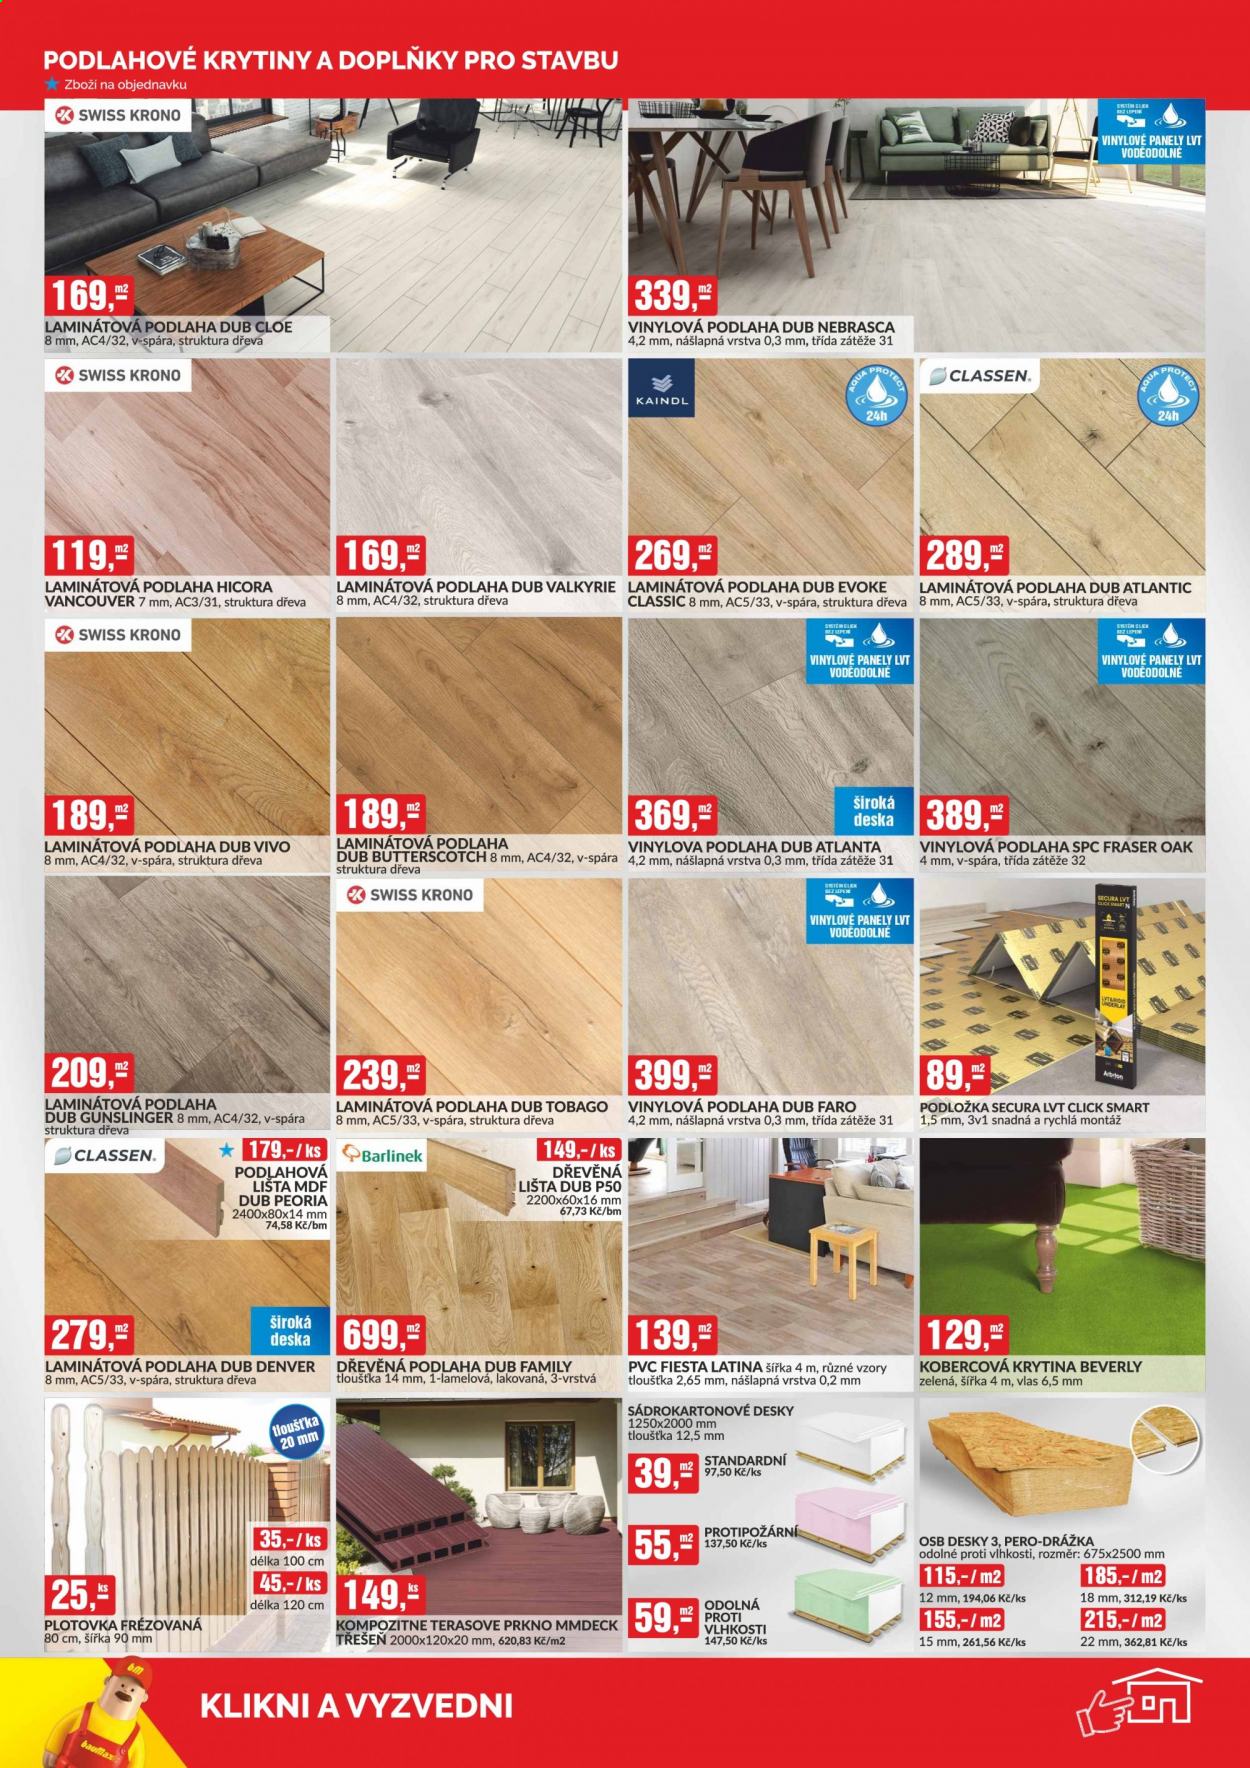 thumbnail - Leták Baumax - 27.3.2021 - 30.4.2021 - Produkty v akci - deska, podlahová lišta, podlahové krytiny, podlaha, dřevěná podlaha, vinylová podlaha, laminátová podlaha, sádrokartonová deska, terasové prkno, osb desky, plotovky, podložka. Strana 6.